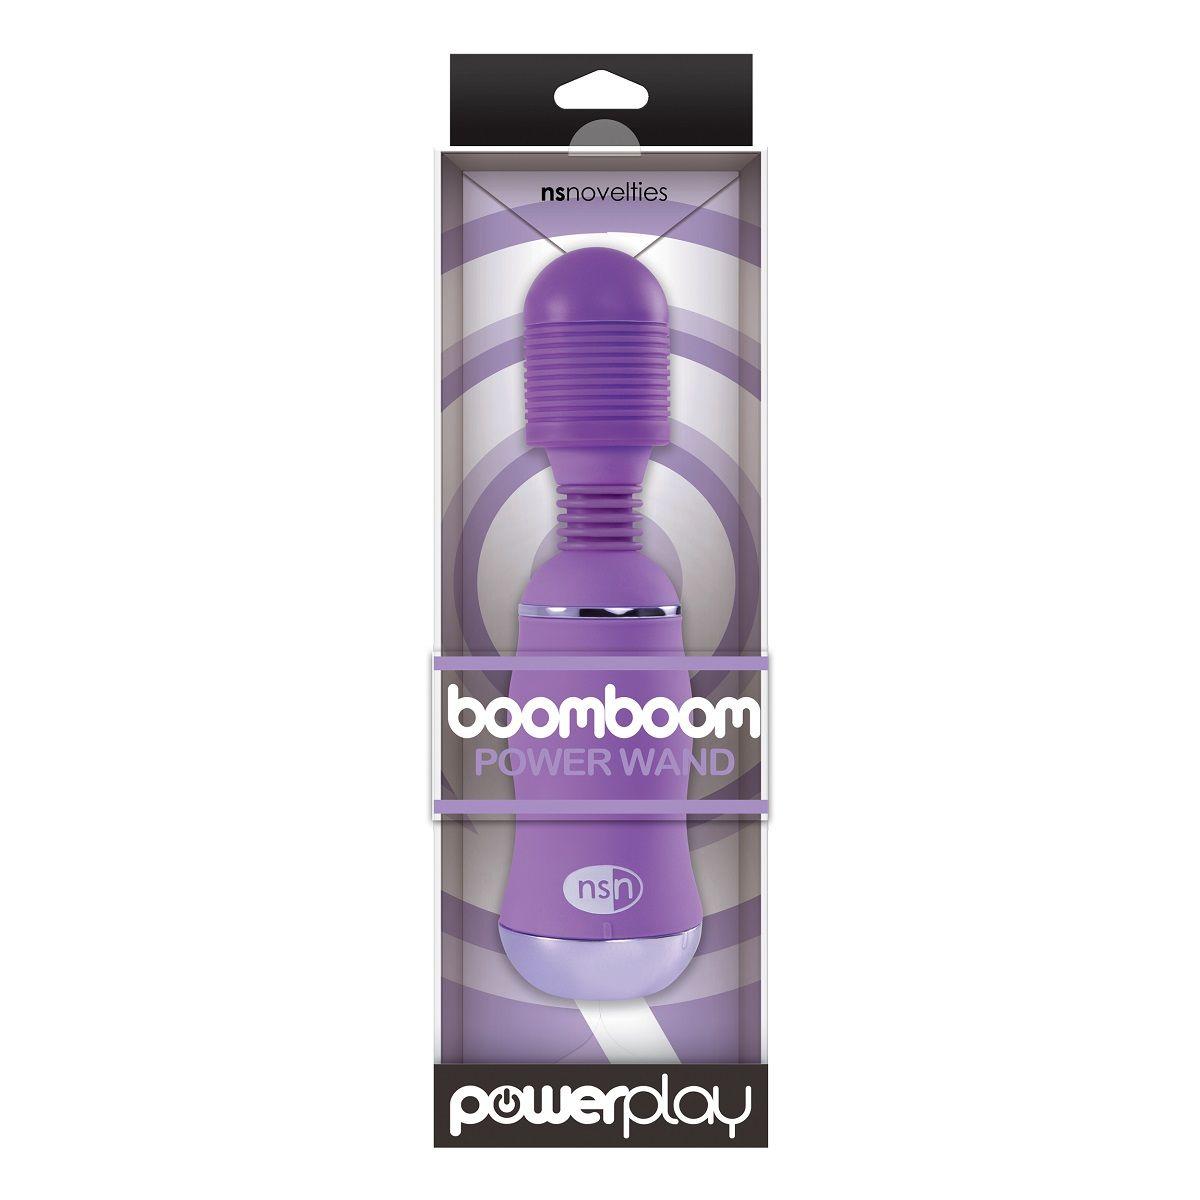 Фиолетовый вибромассажер с усиленной вибрацией BoomBoom Power Wand